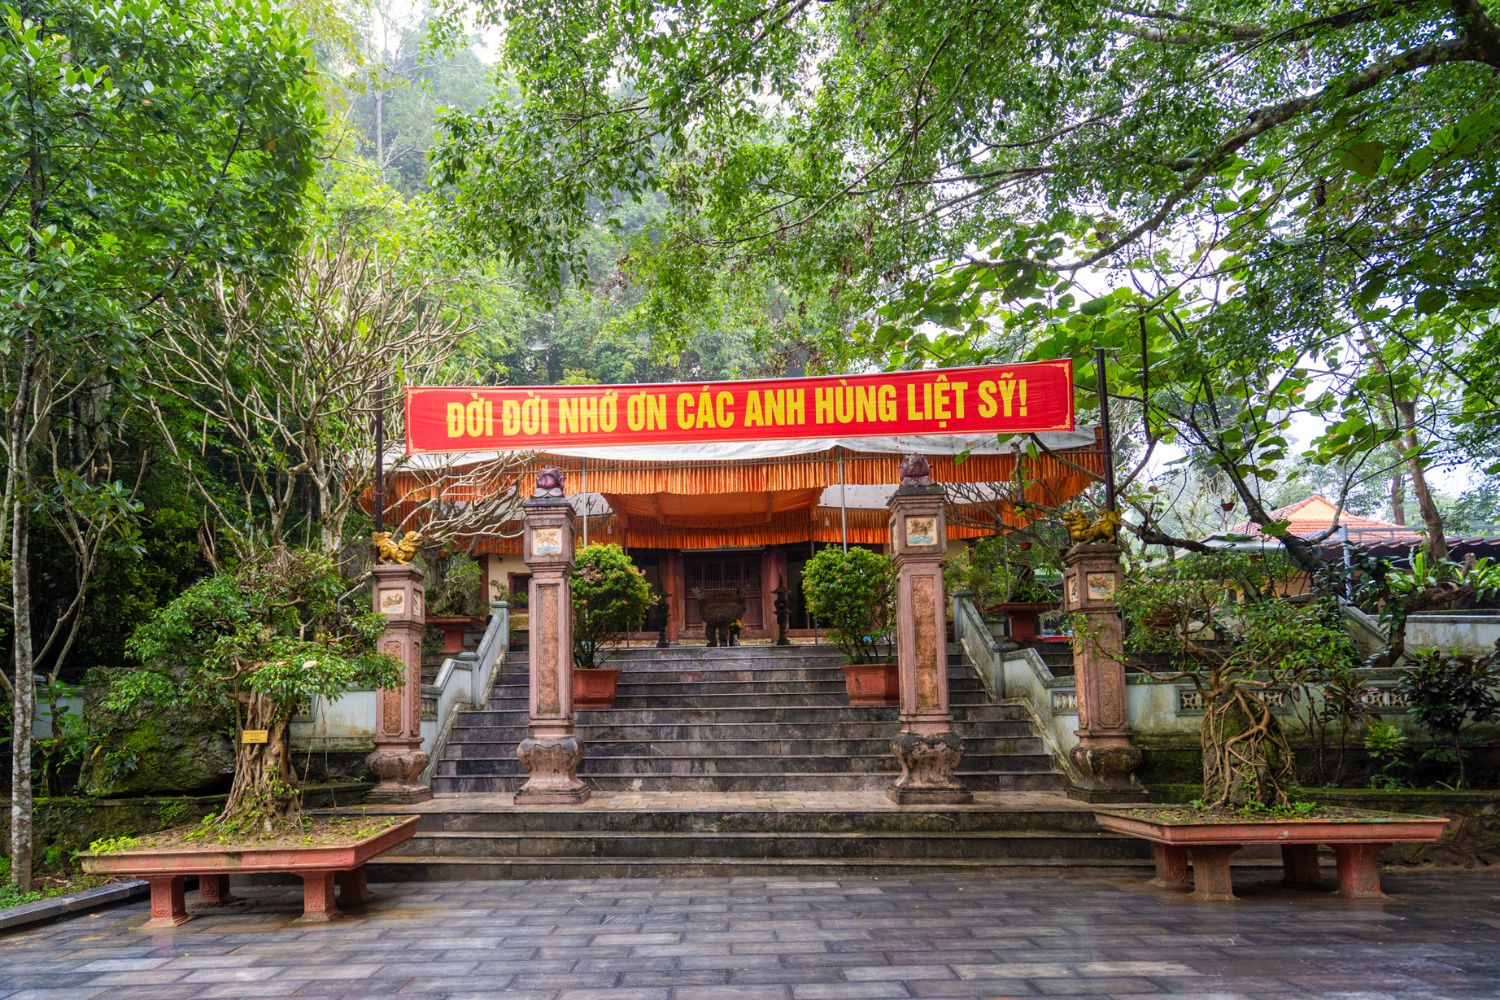 Quang Binh's Top Cultural and Historical Destinations